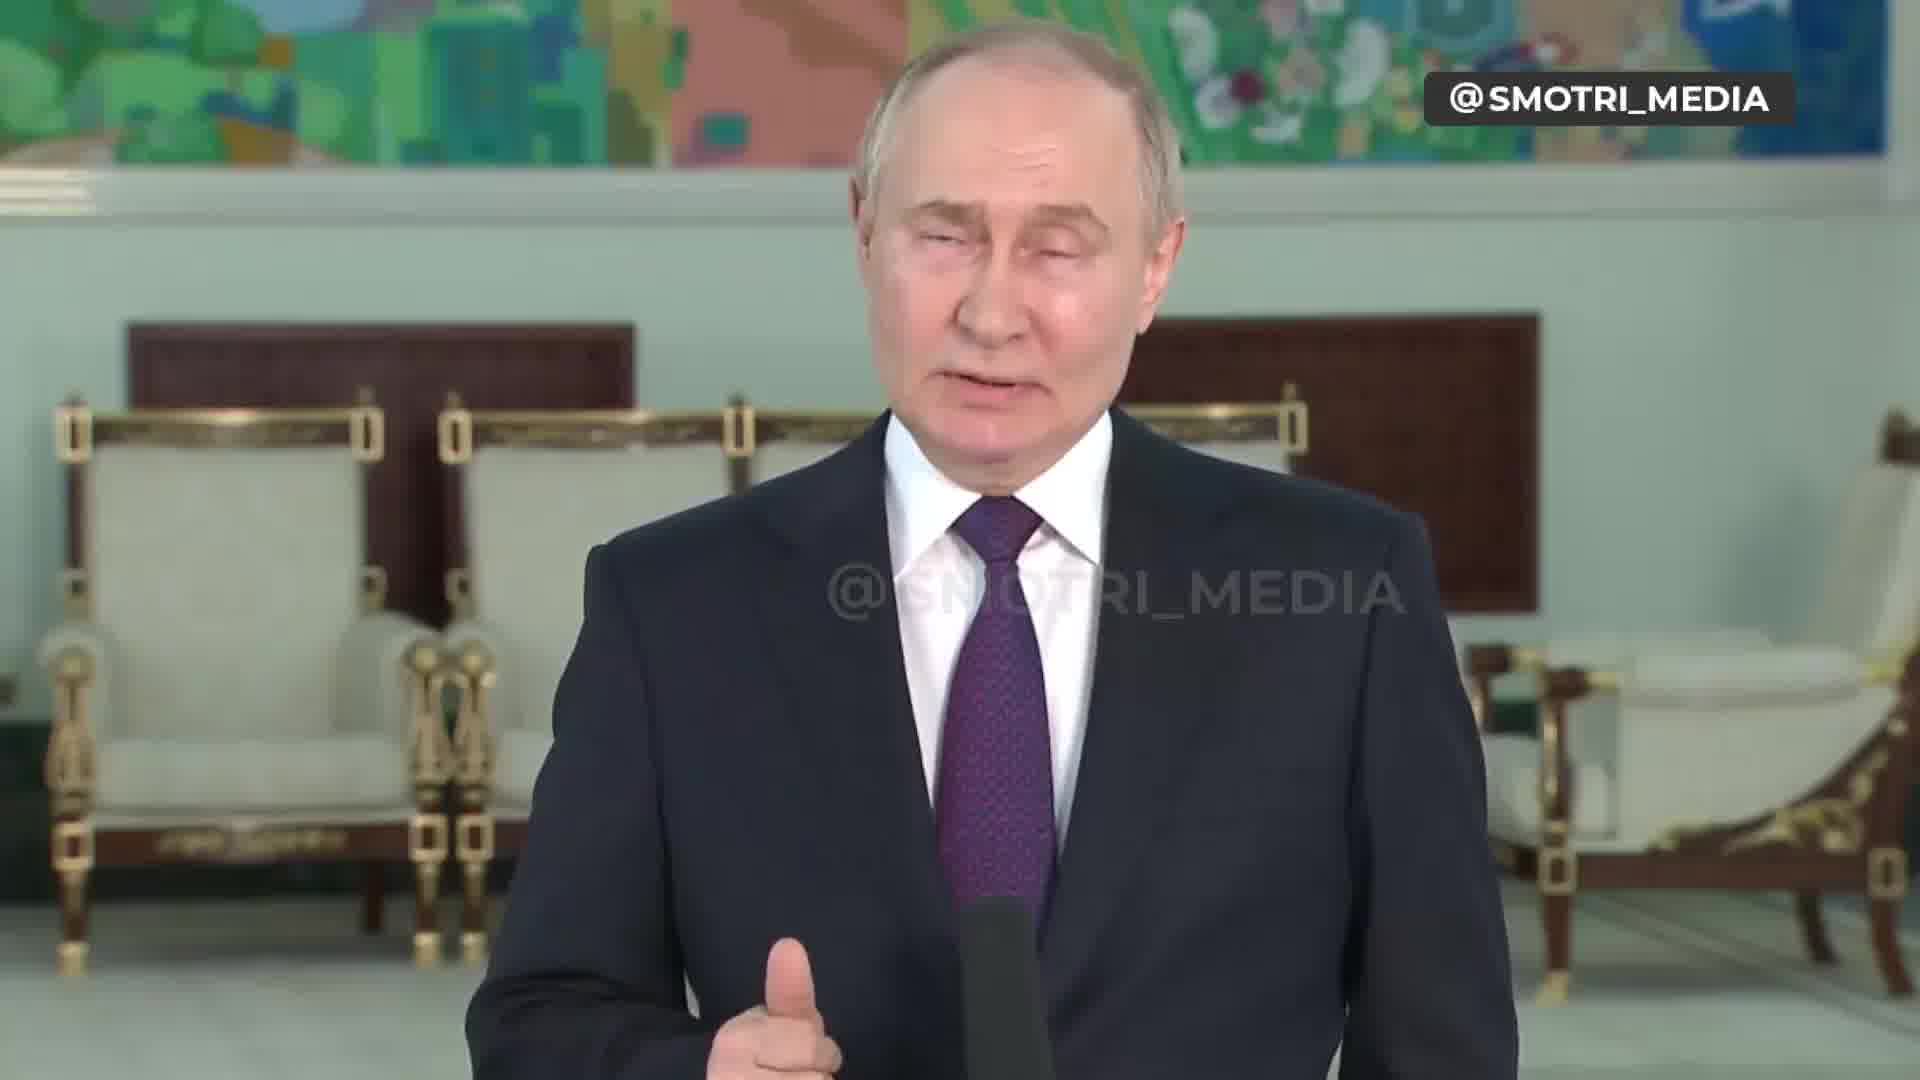 Poetin zegt dat de Verchovna Rada van Oekraïne legitiem is en dat de voorzitter van de Verchovna Rada de waarnemend president zou moeten zijn